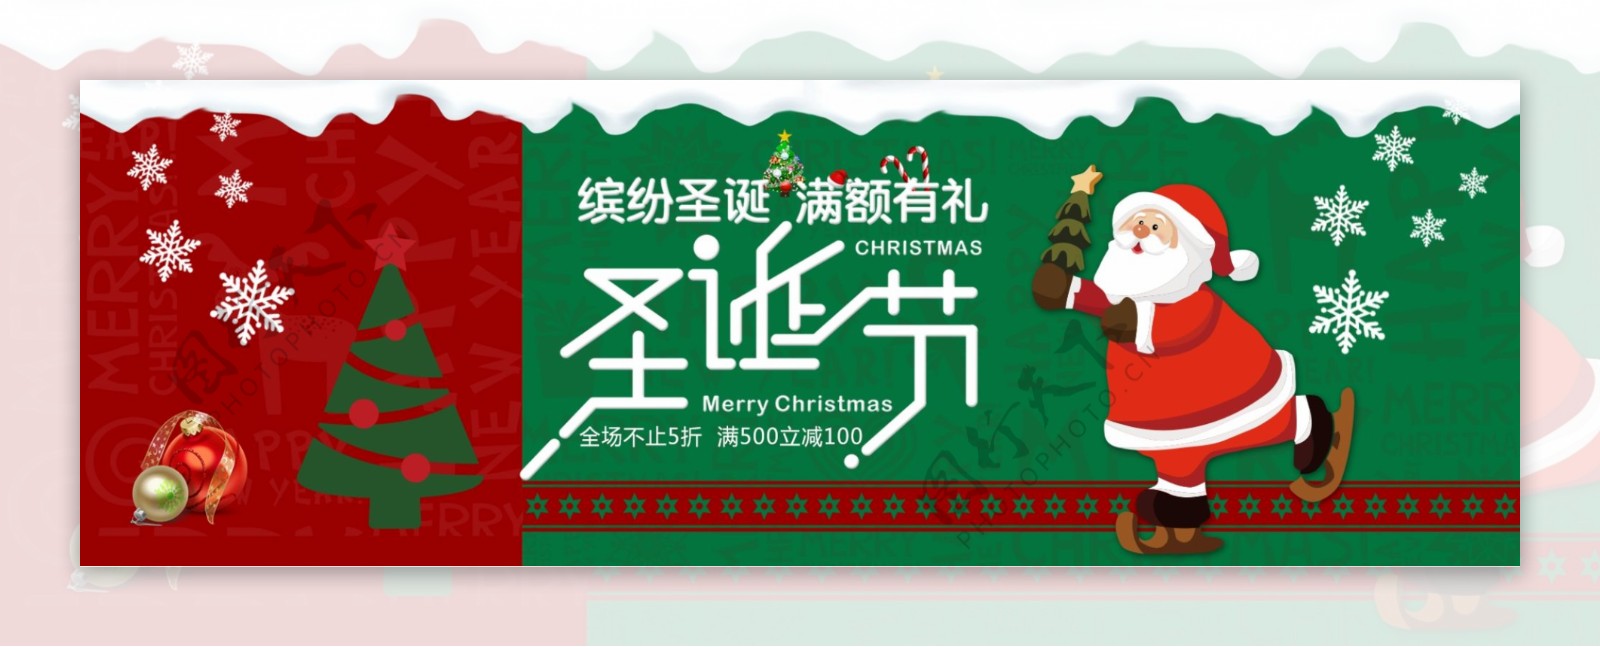 红绿撞色雪花圣诞树圣诞节淘宝banner